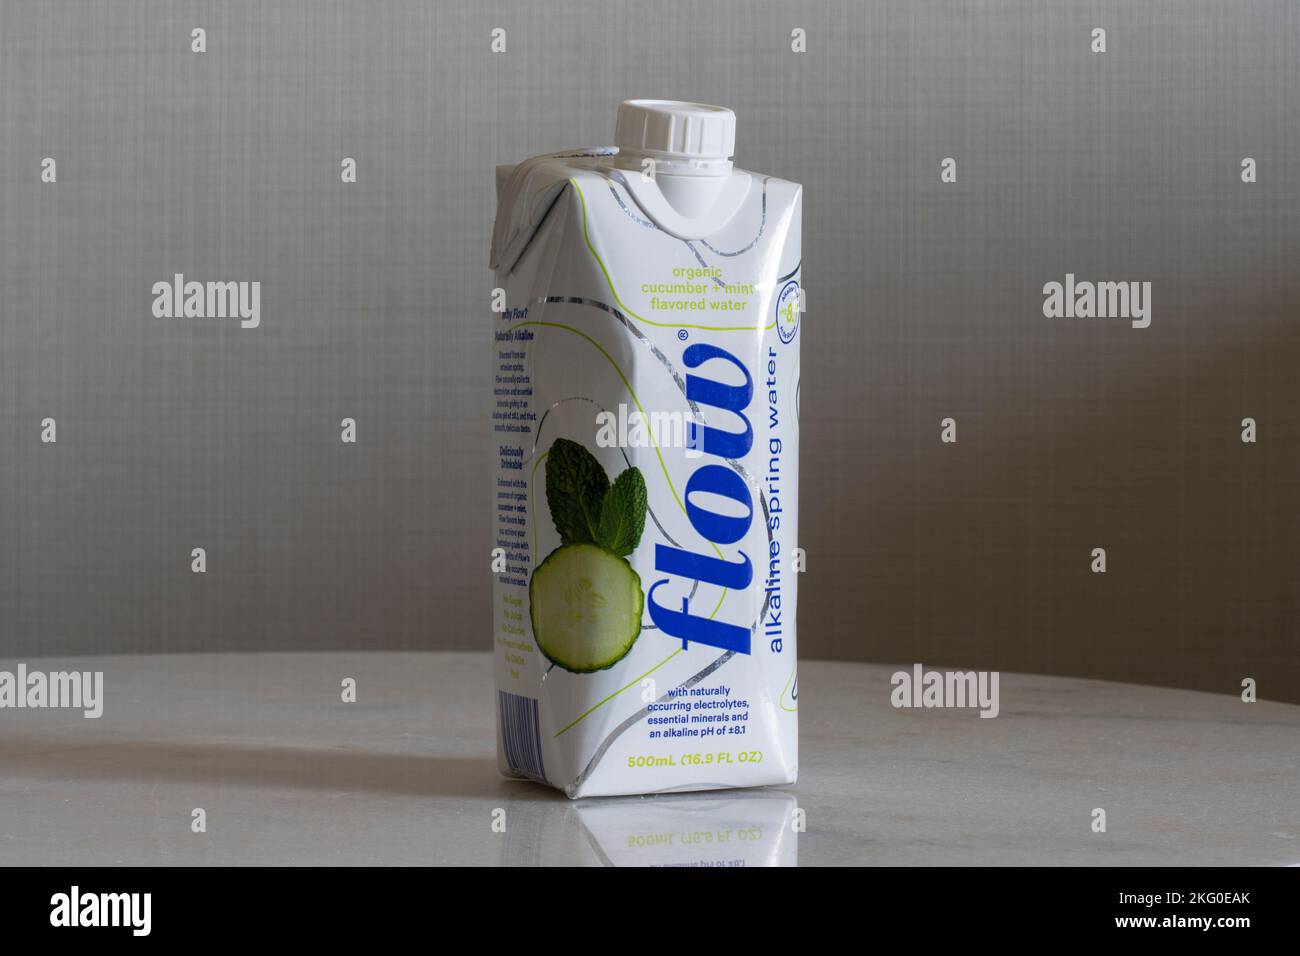 Une bouteille d'eau de source alcaline au goût de concombre à la menthe isolée sur une table basse. Flow est une entreprise d'eau de qualité à croissance rapide basée dans ... Banque D'Images